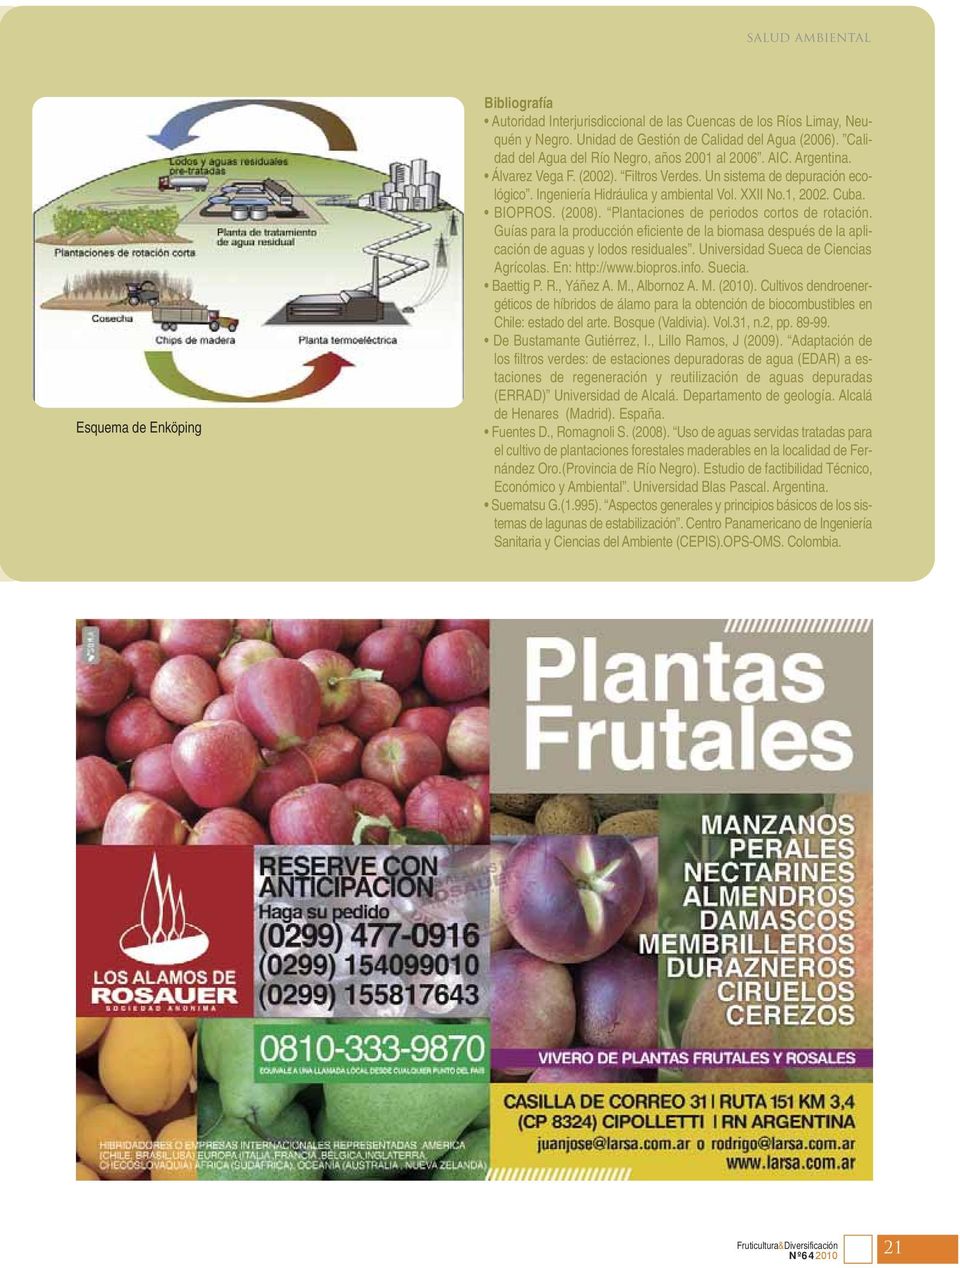 Cuba. BIOPROS. (2008). Plantaciones de periodos cortos de rotación. Guías para la producción eficiente de la biomasa después de la aplicación de aguas y lodos residuales.